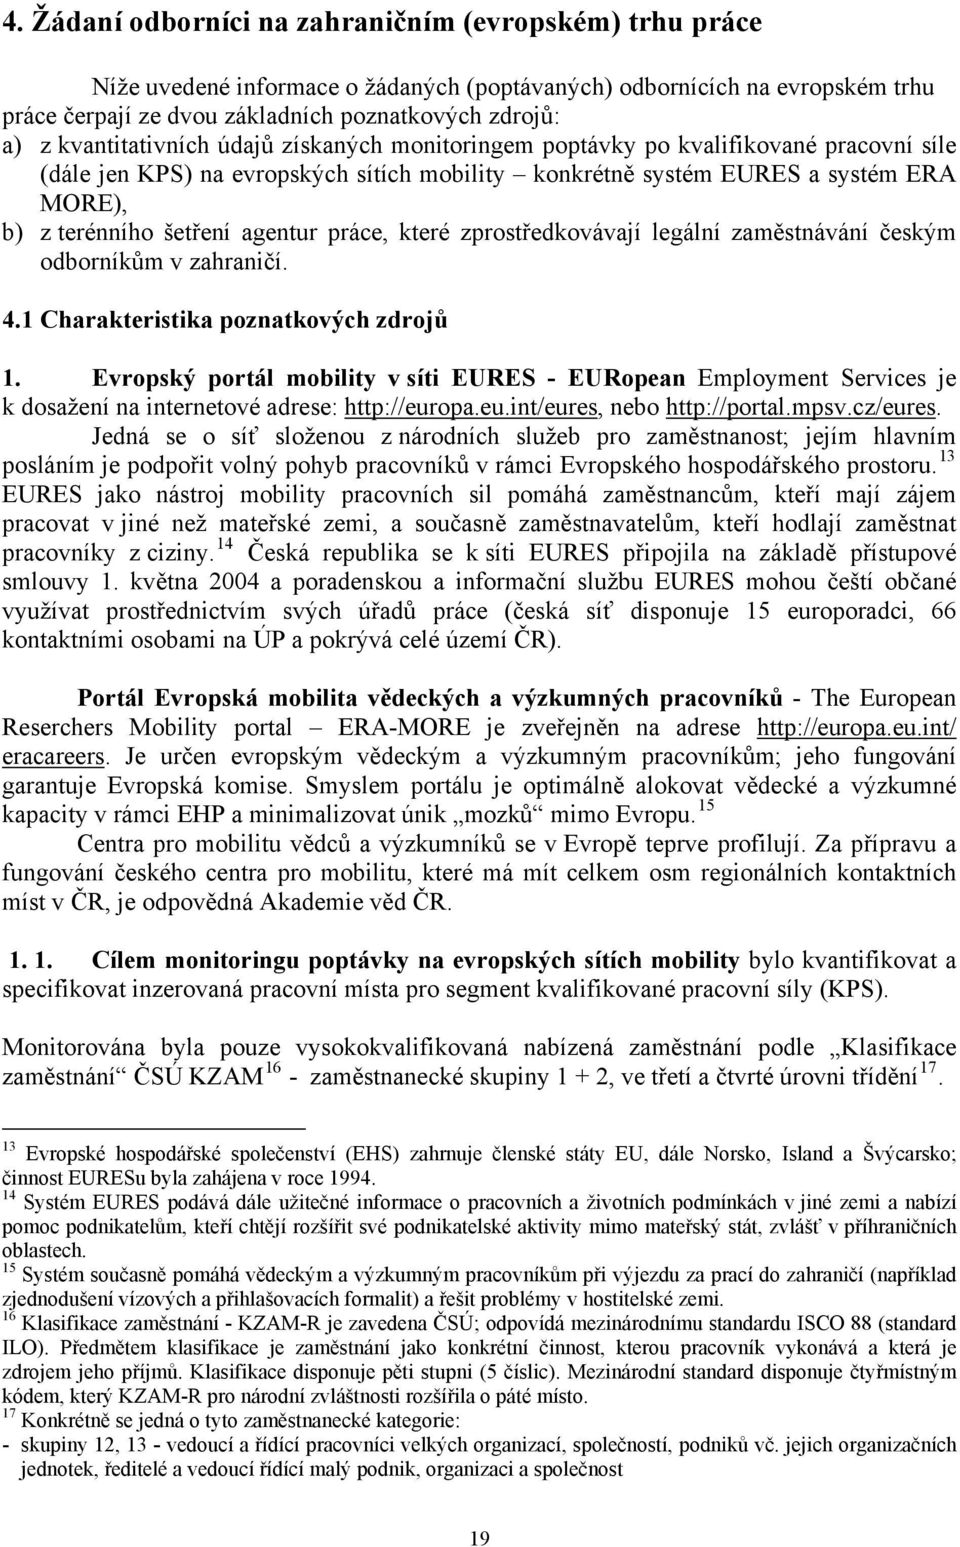 agentur práce, které zprostředkovávají legální zaměstnávání českým odborníkům v zahraničí. 4.1 Charakteristika poznatkových zdrojů 1.